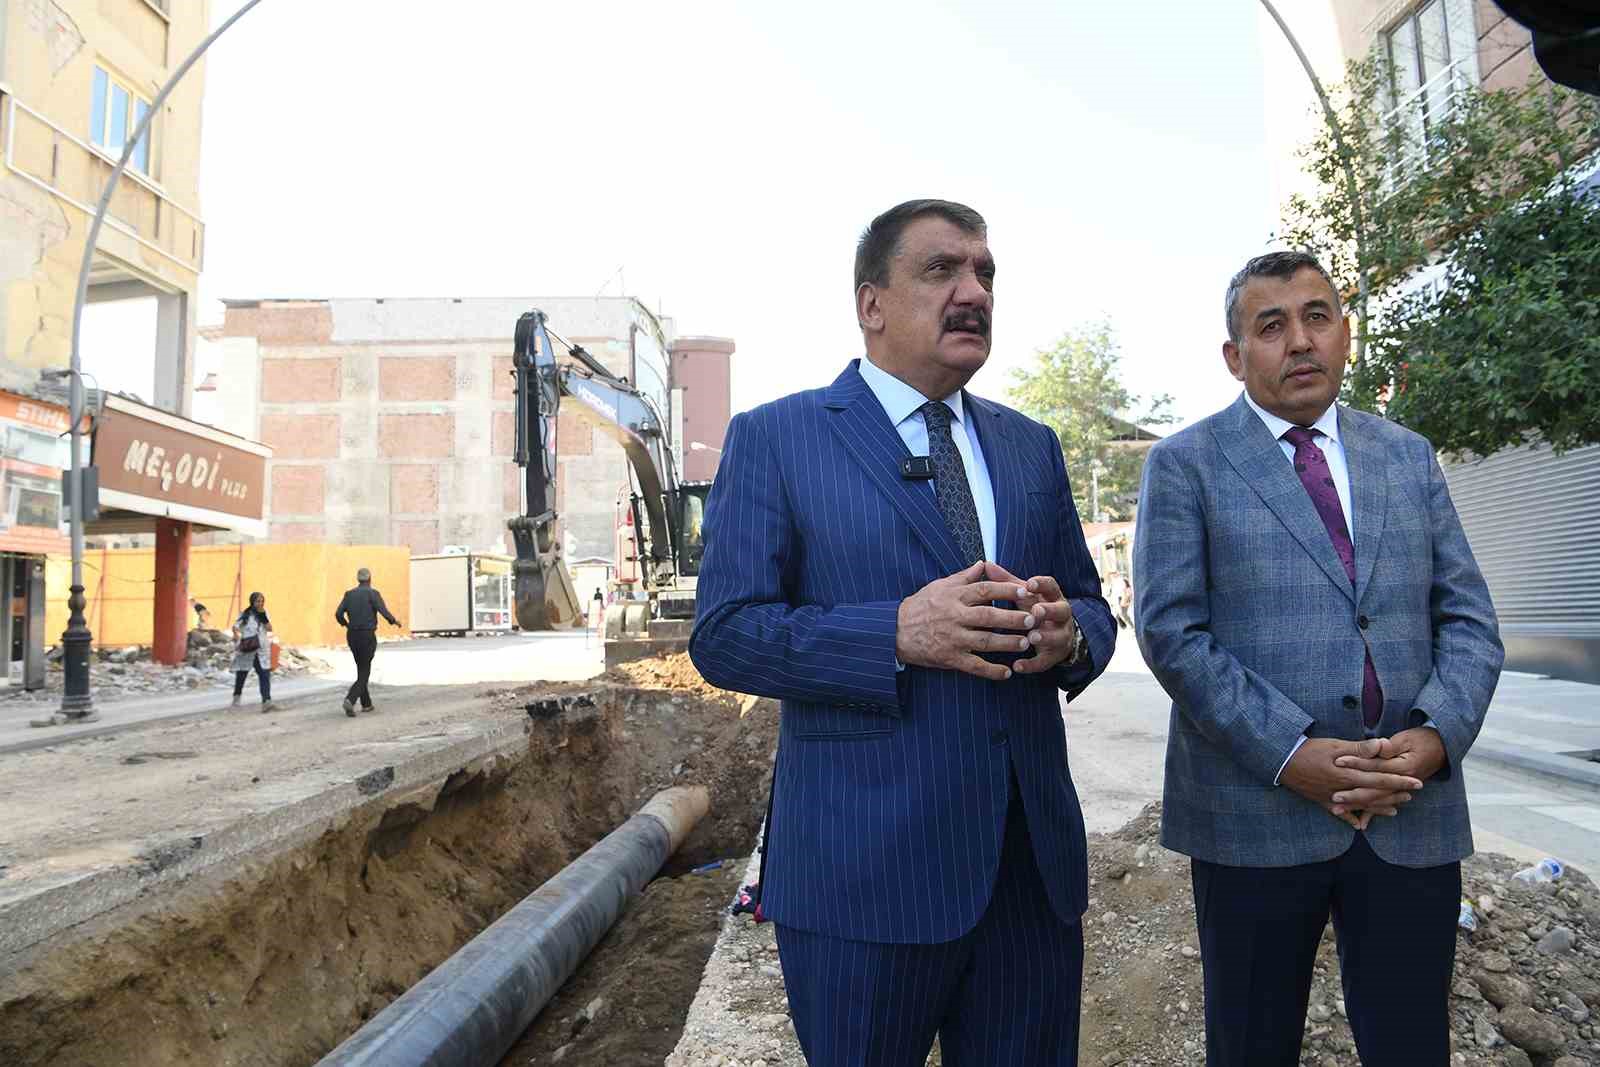 Belediye Başkanı Selahattin Gürkan: “Altyapıyı Yeniden İnşa Ediyoruz”